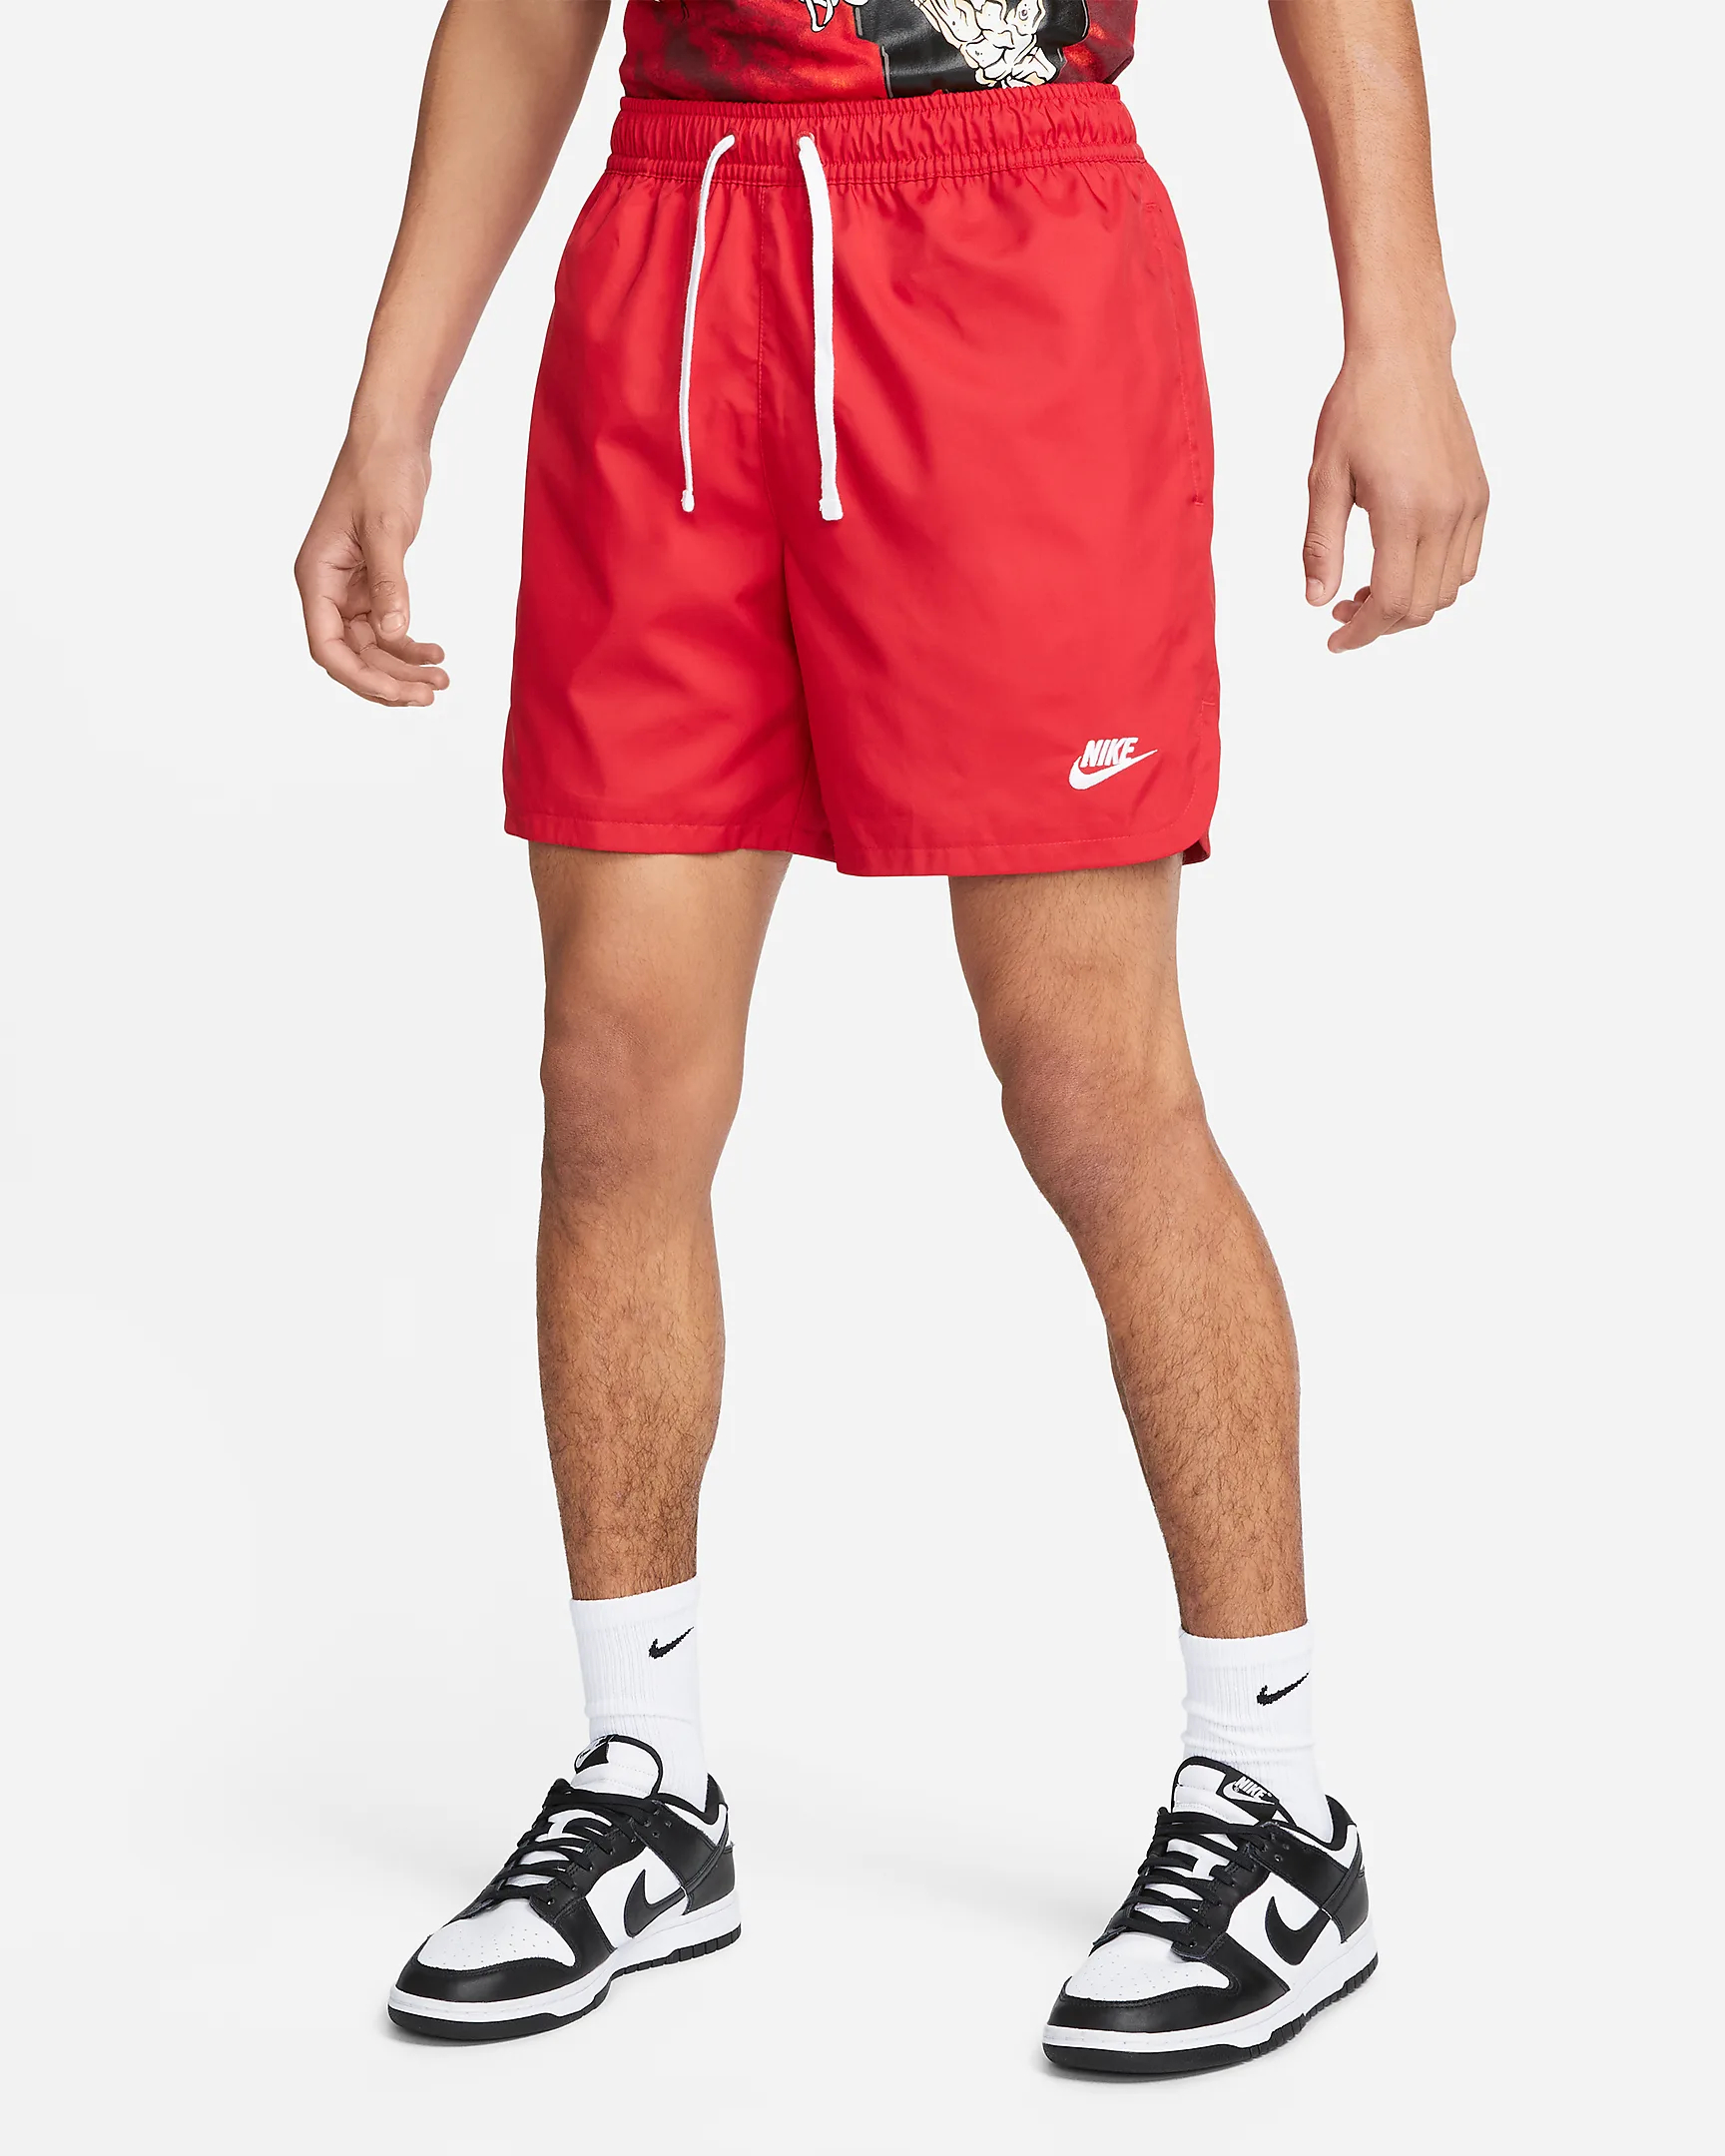 Спортивные шорты мужские Nike Spe Wvn Lnd Flow Short DM6829-657 красные XL